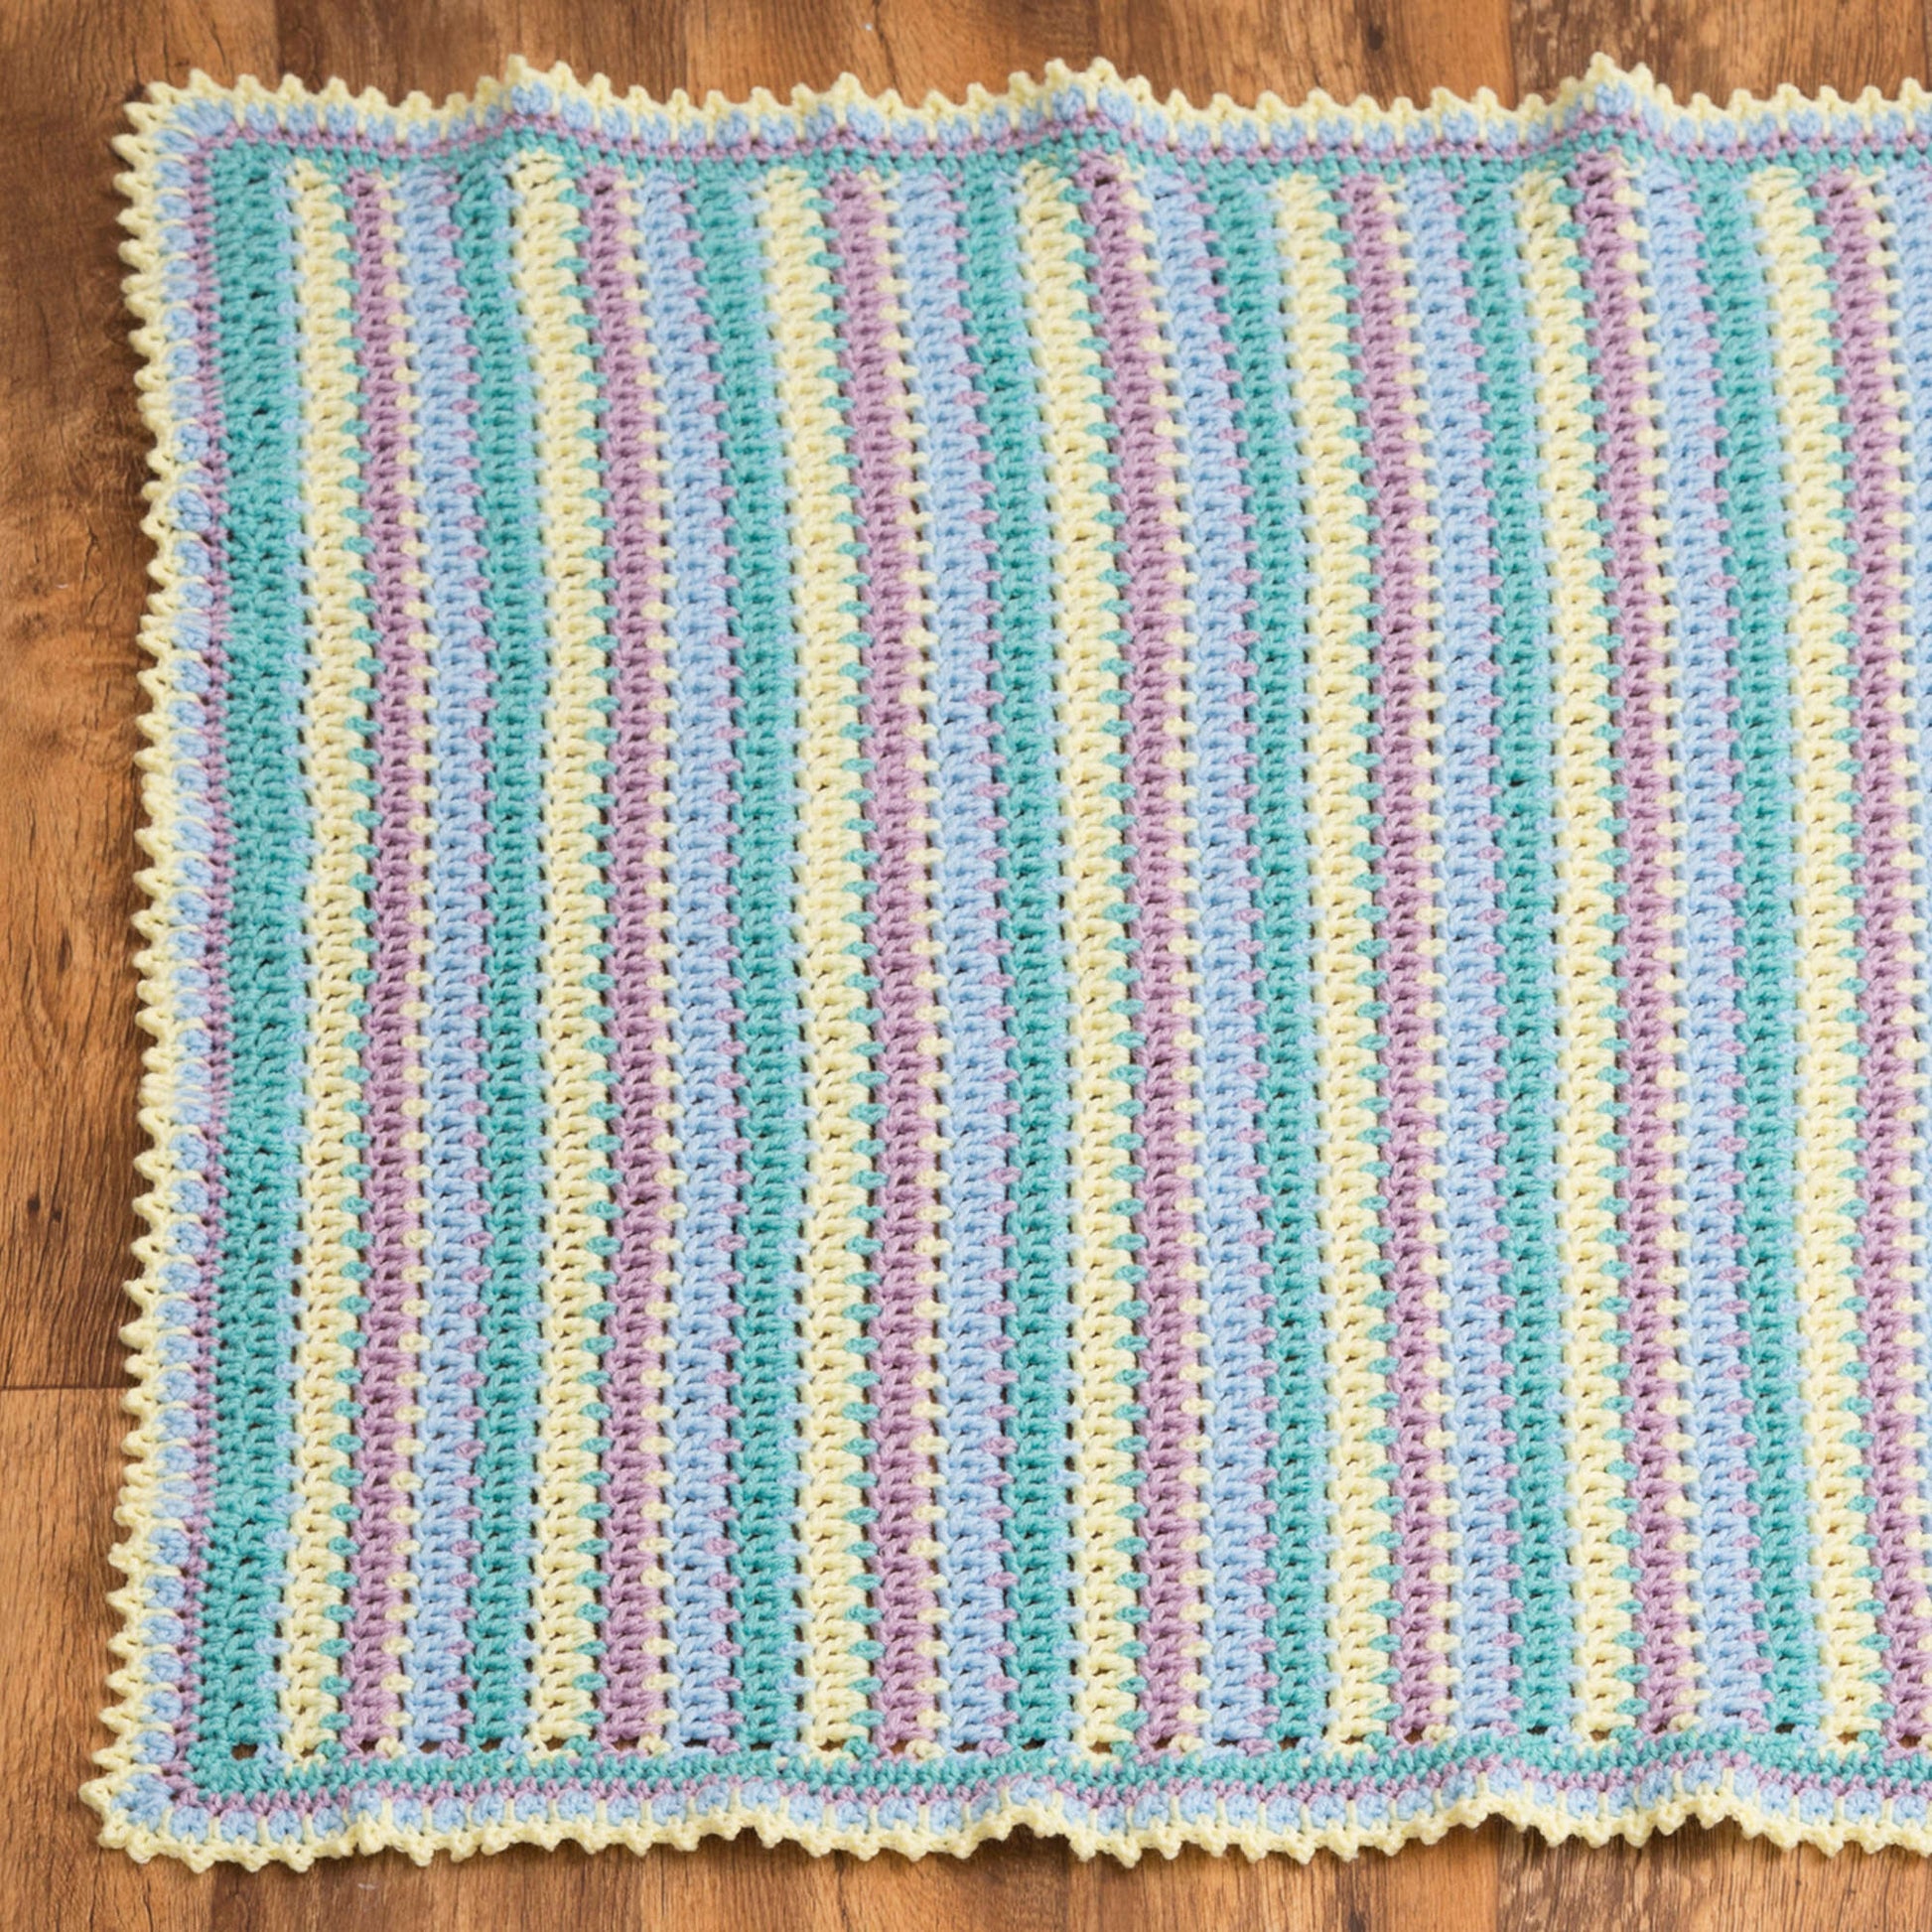 Free Red Heart Crochet Baby Stripes Blanket Pattern